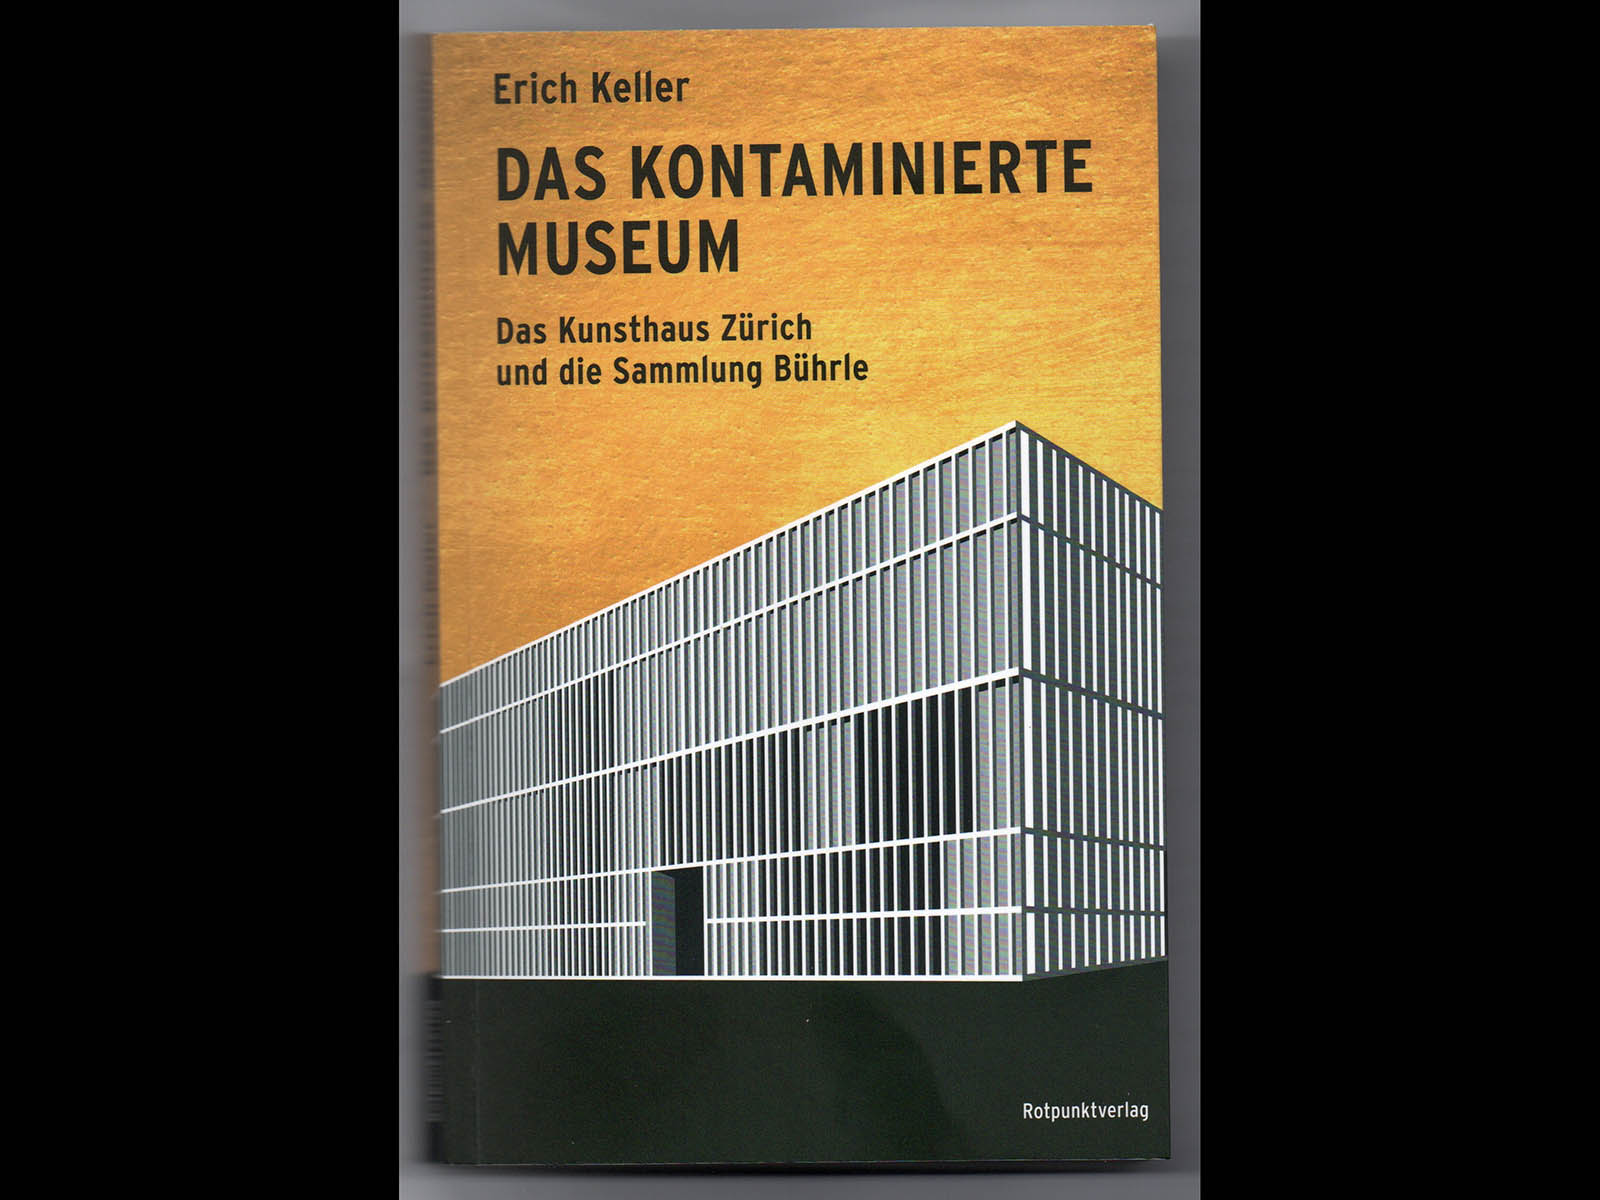 Titelseite des Buches "Das kontaminierte Museum" von Erich Keller, erschiene 2021 im Rotpunktverlag.